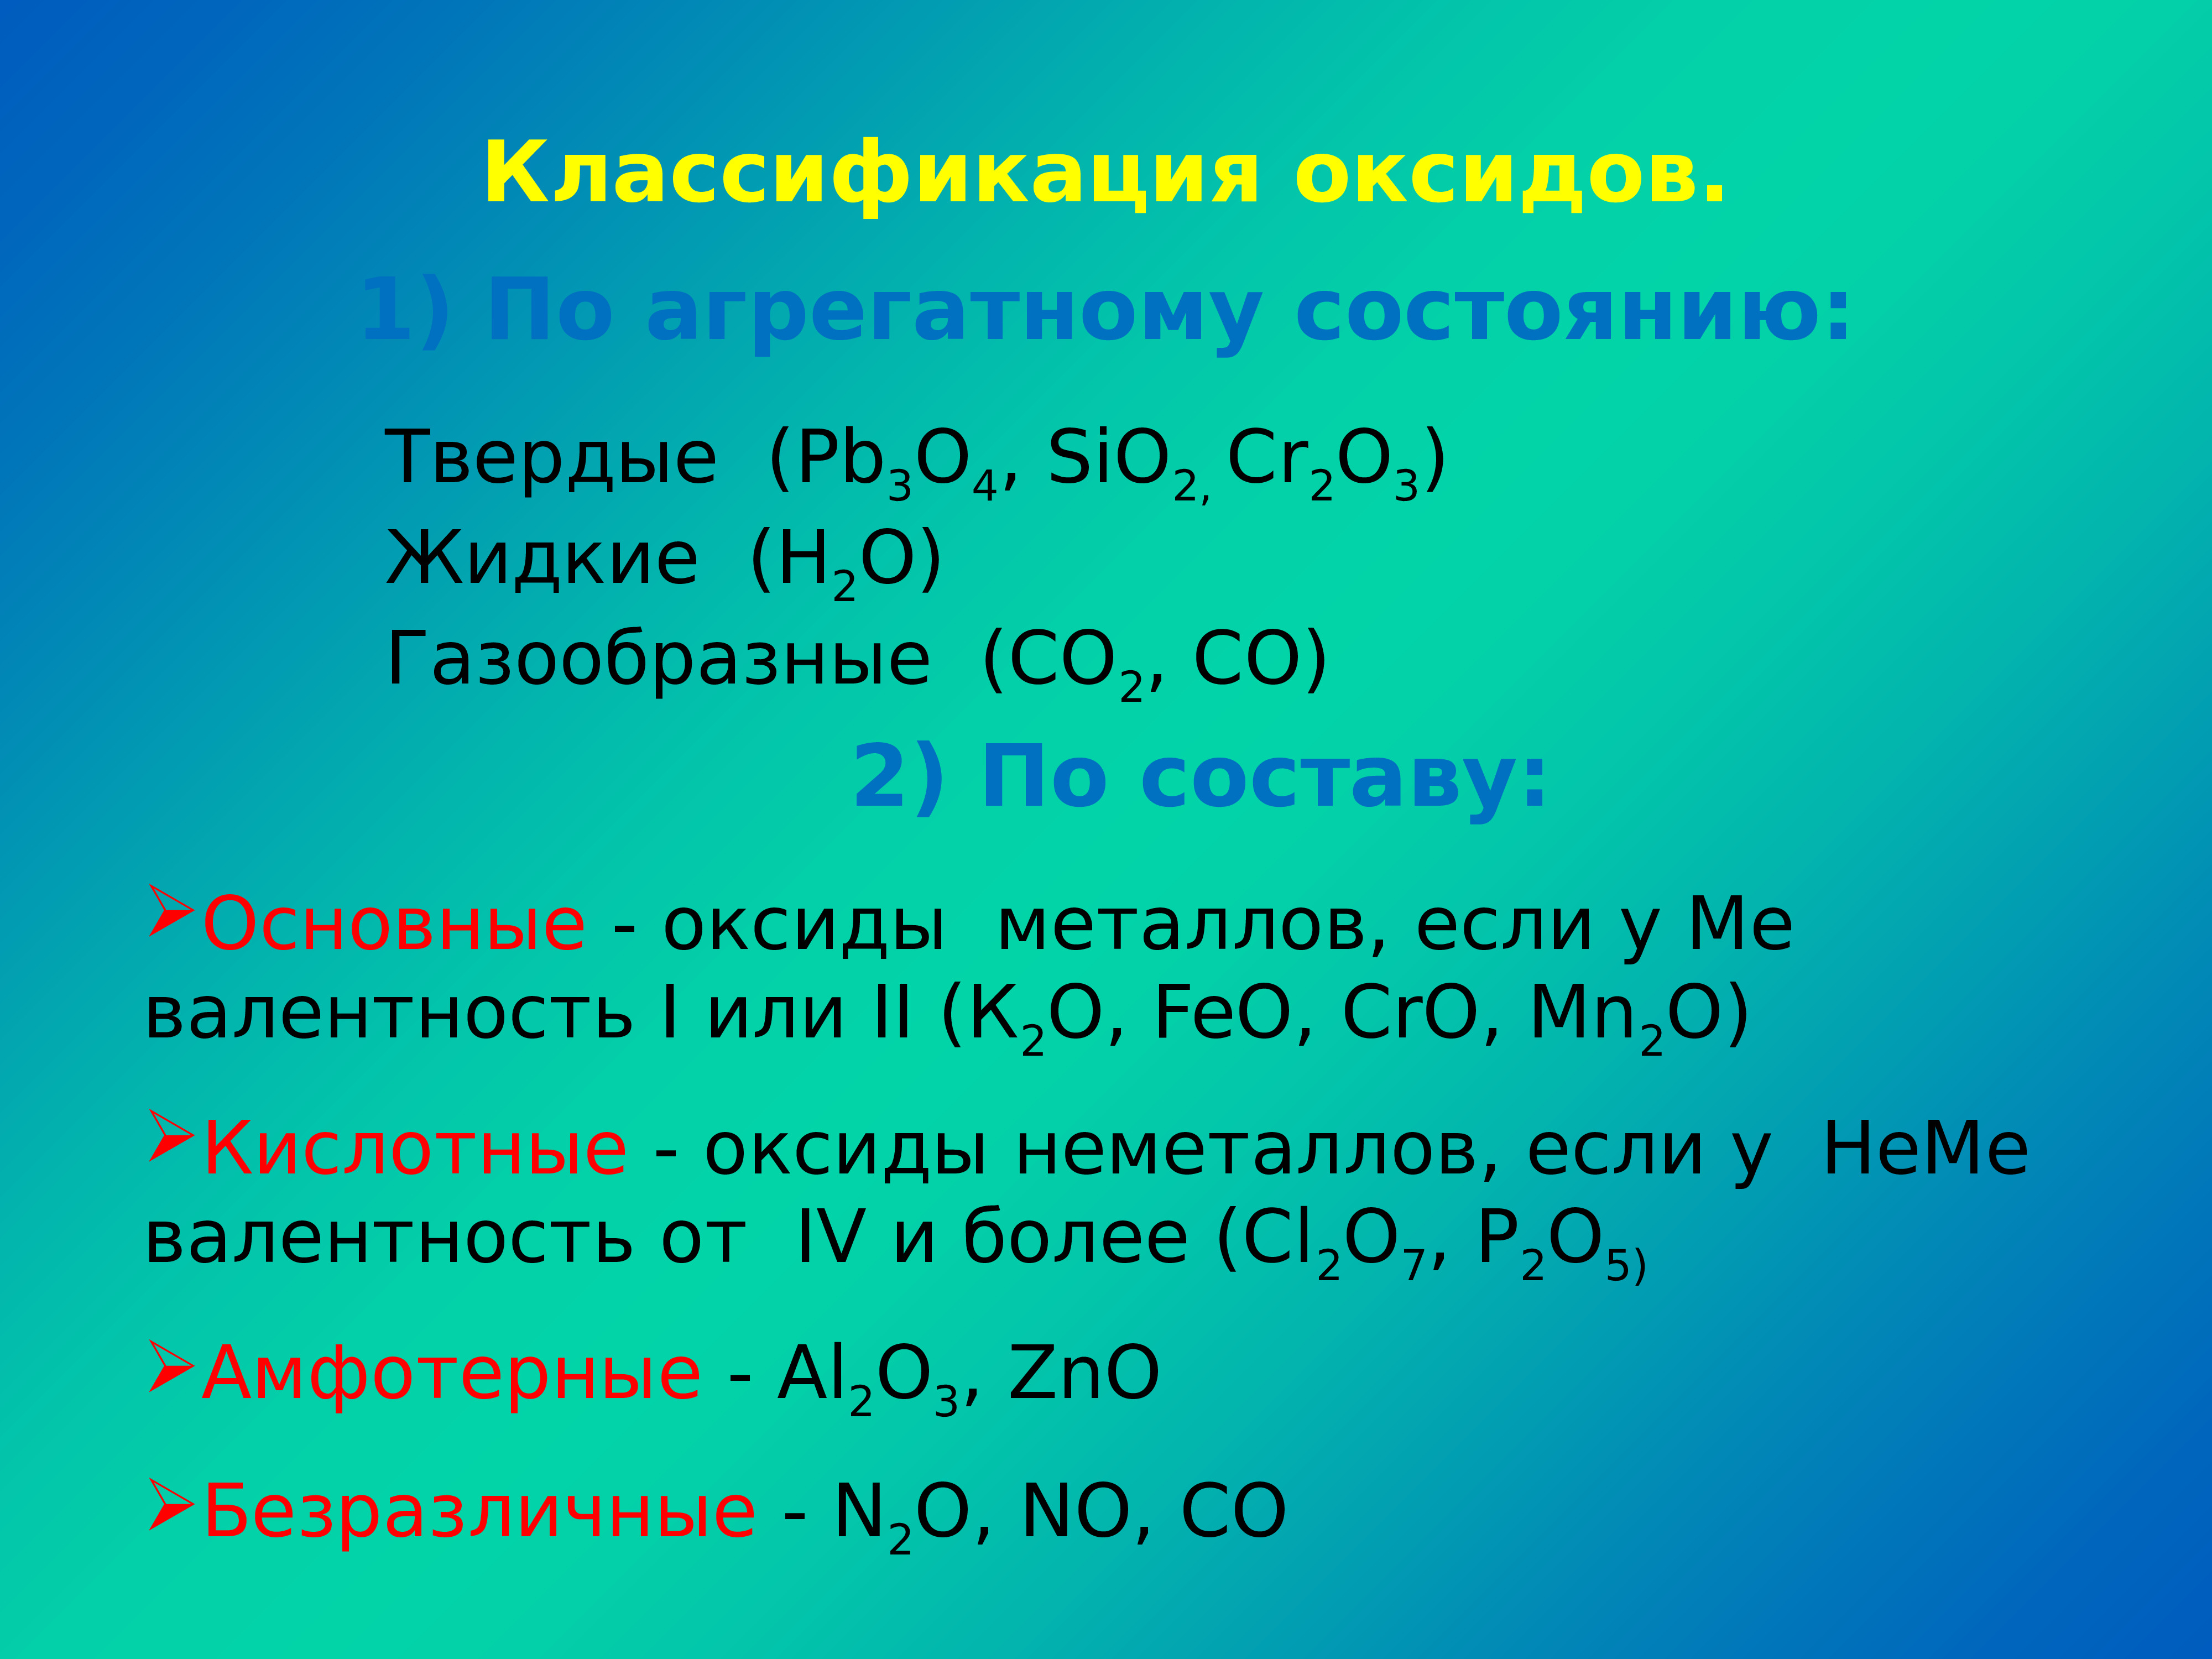 Основные оксиды виды. Классификация оксидов таблица. Классификация и название оксидов. Оксиды 8 класс. Химические названия оксидов.